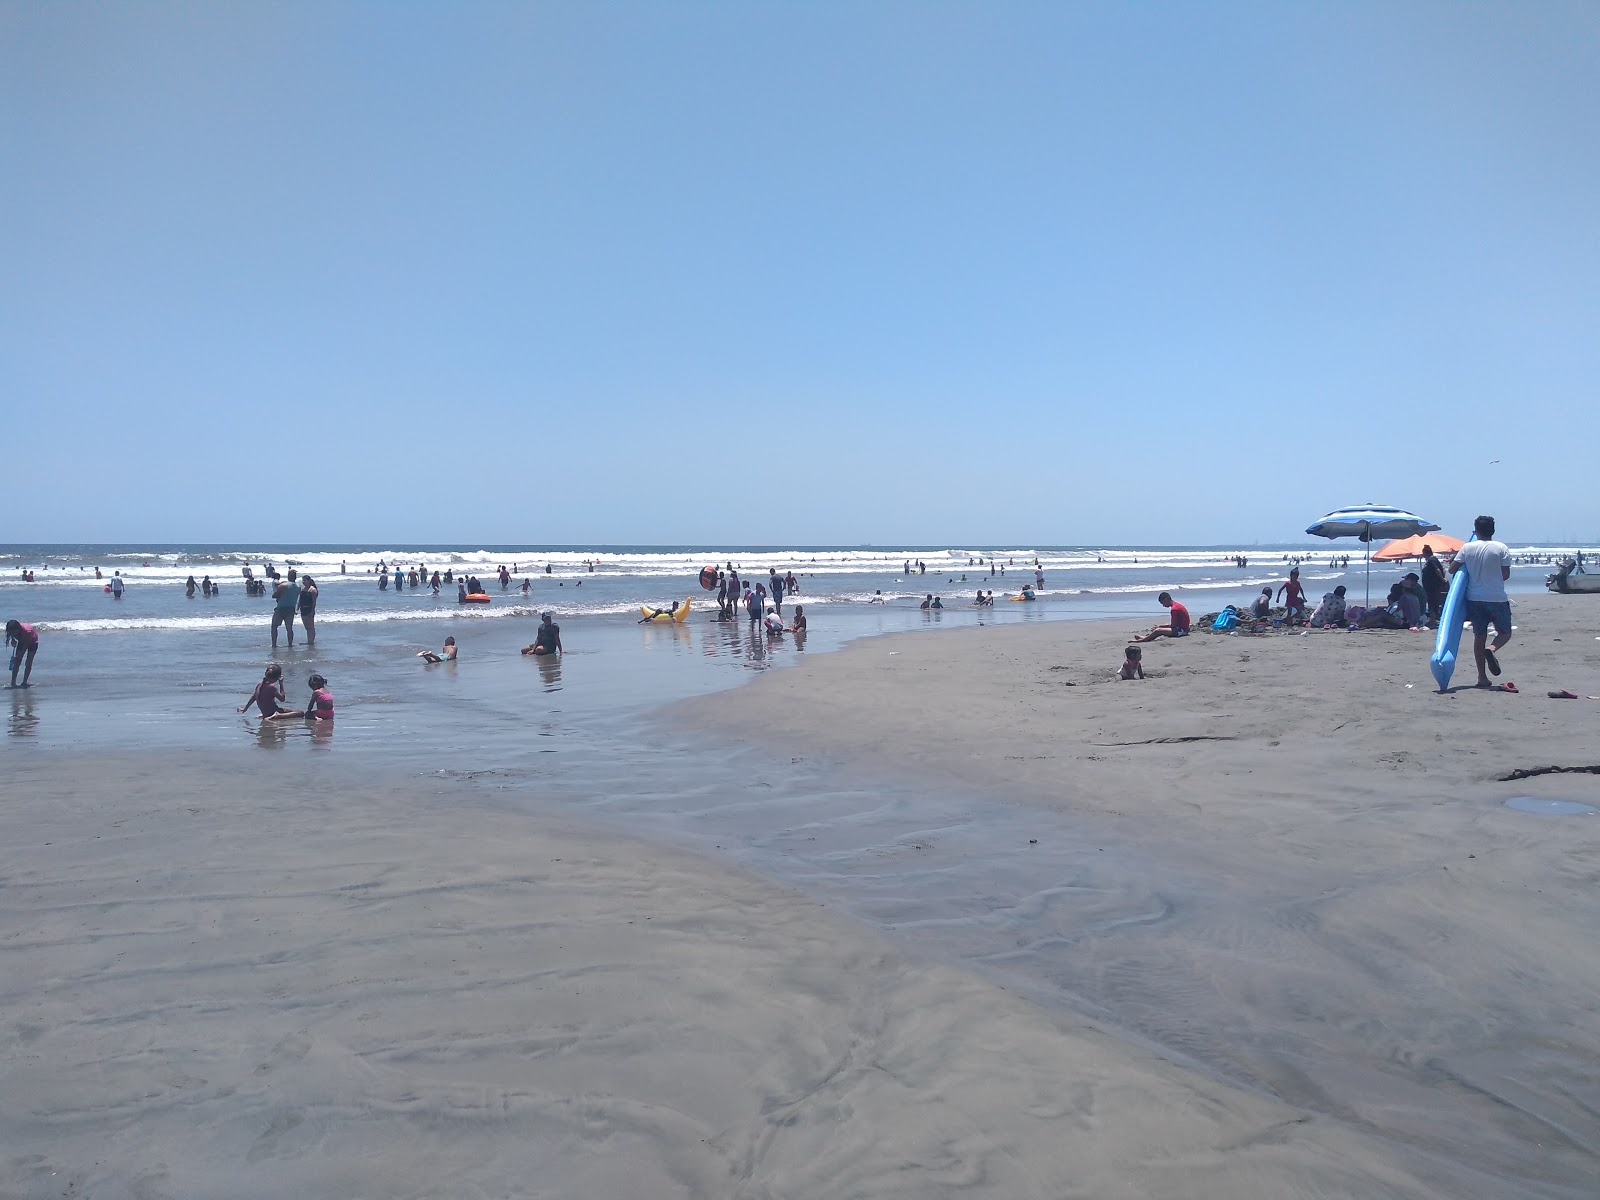 Playa las Penitas'in fotoğrafı kahverengi kum yüzey ile